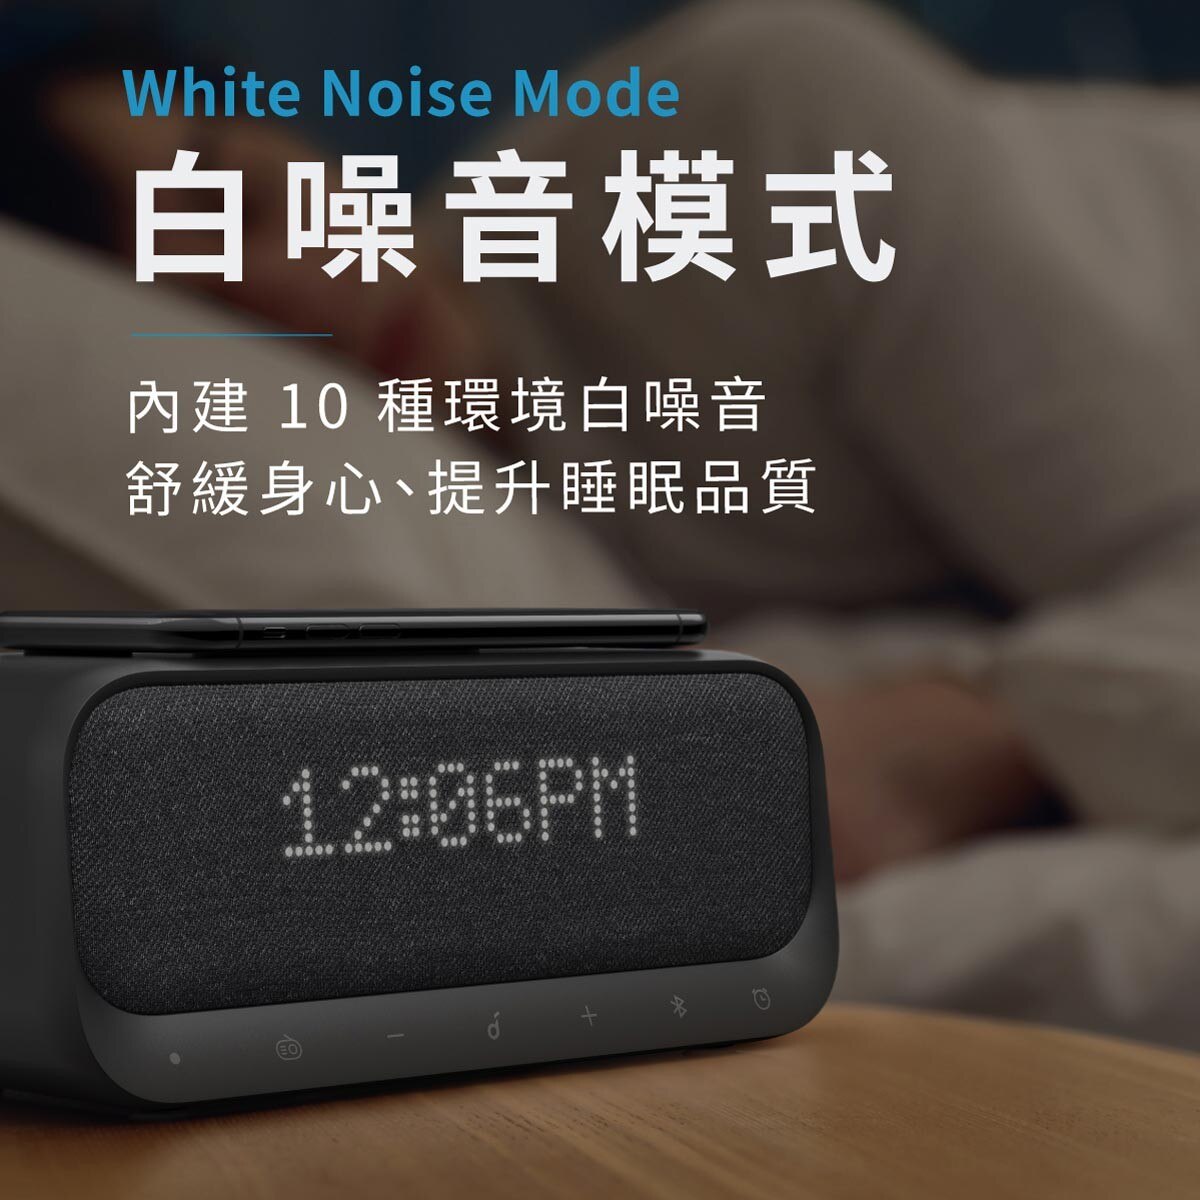 ANKER 無線充電藍牙音箱，白噪音模式，內建10種環境白噪音舒緩身心、提升睡眠品質。